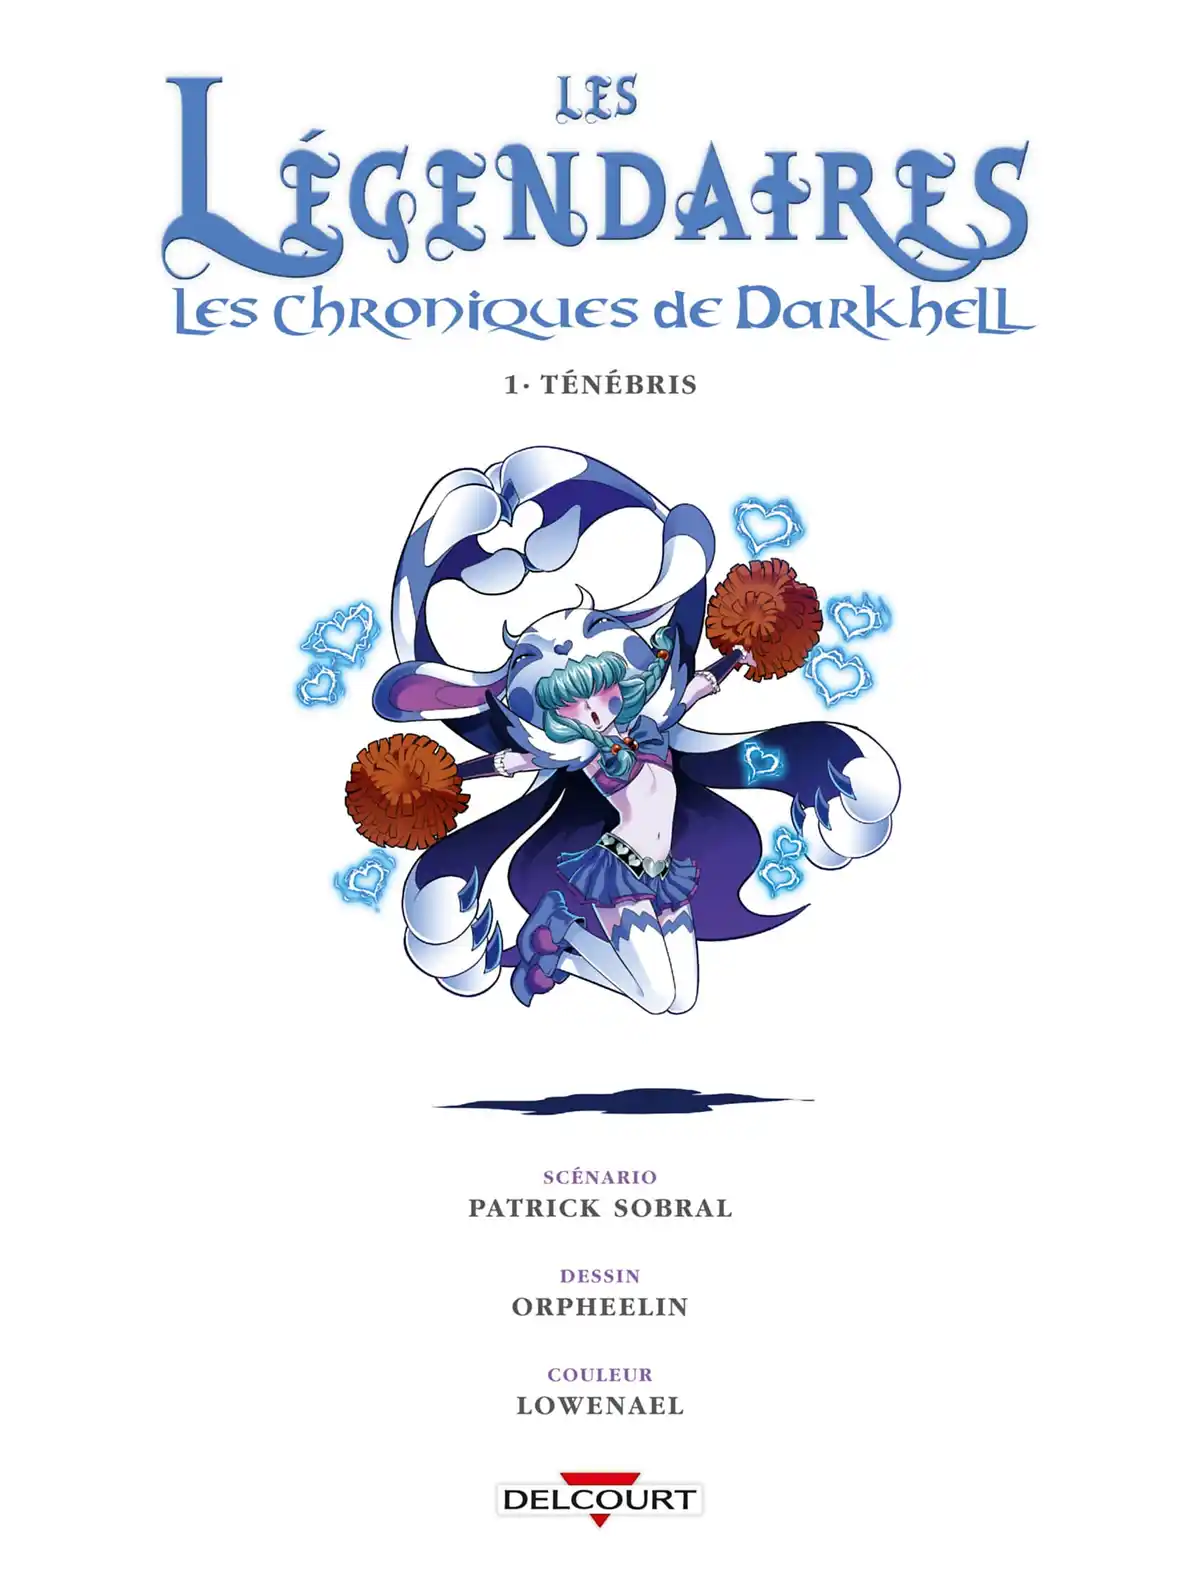 Les Légendaires – Les Chroniques de Darkhell Volume 1 page 2